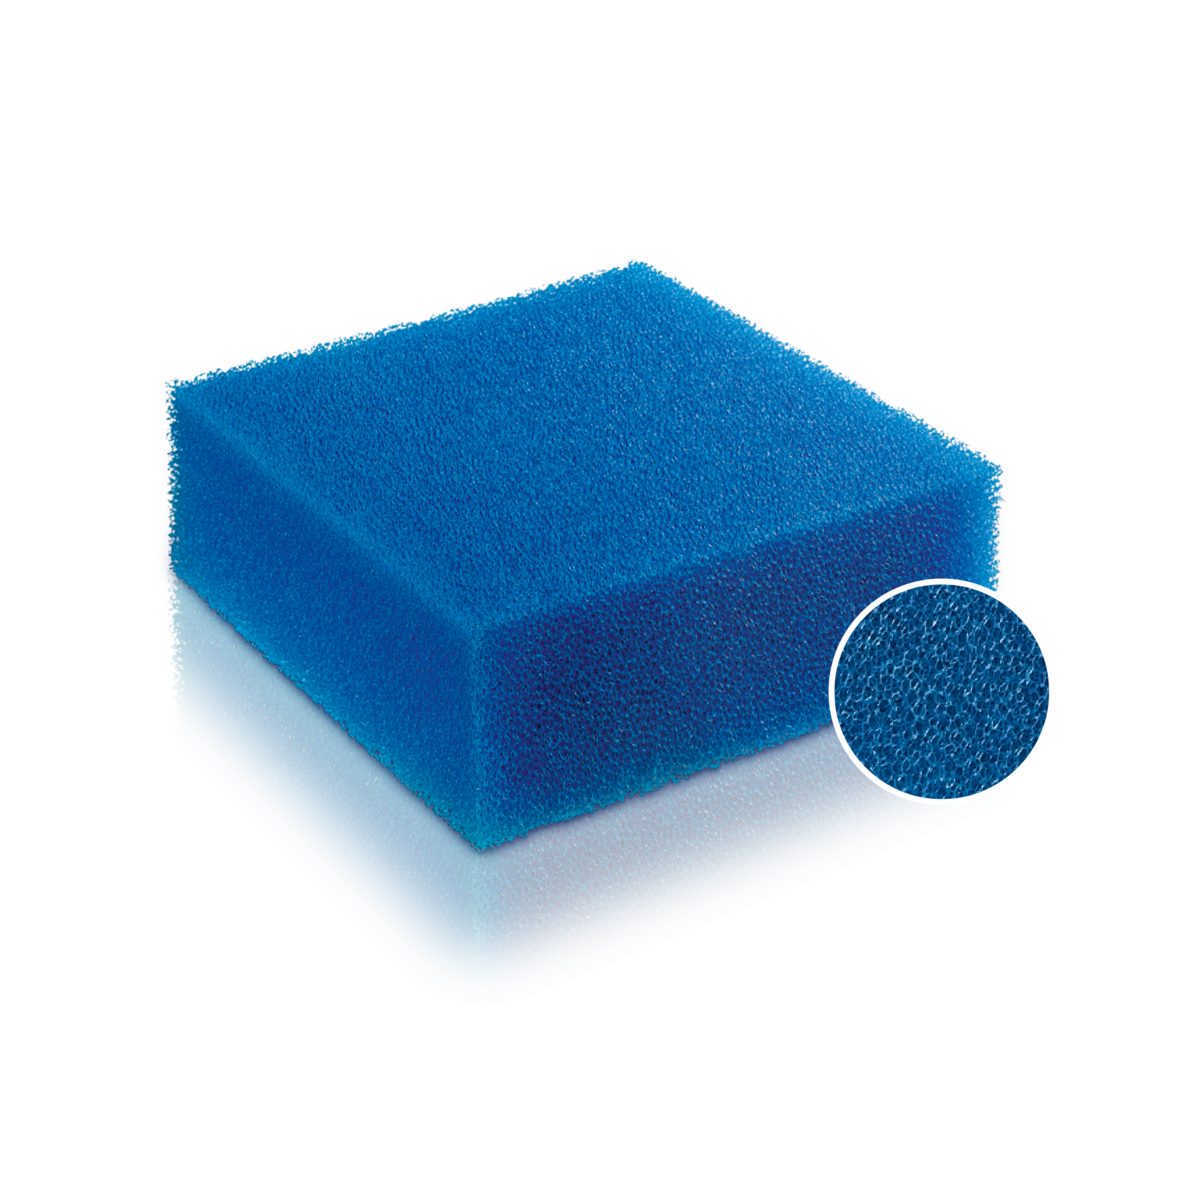 Juwel Filter cartridge - fine sponge Compact / Bioflow 3.0 / M